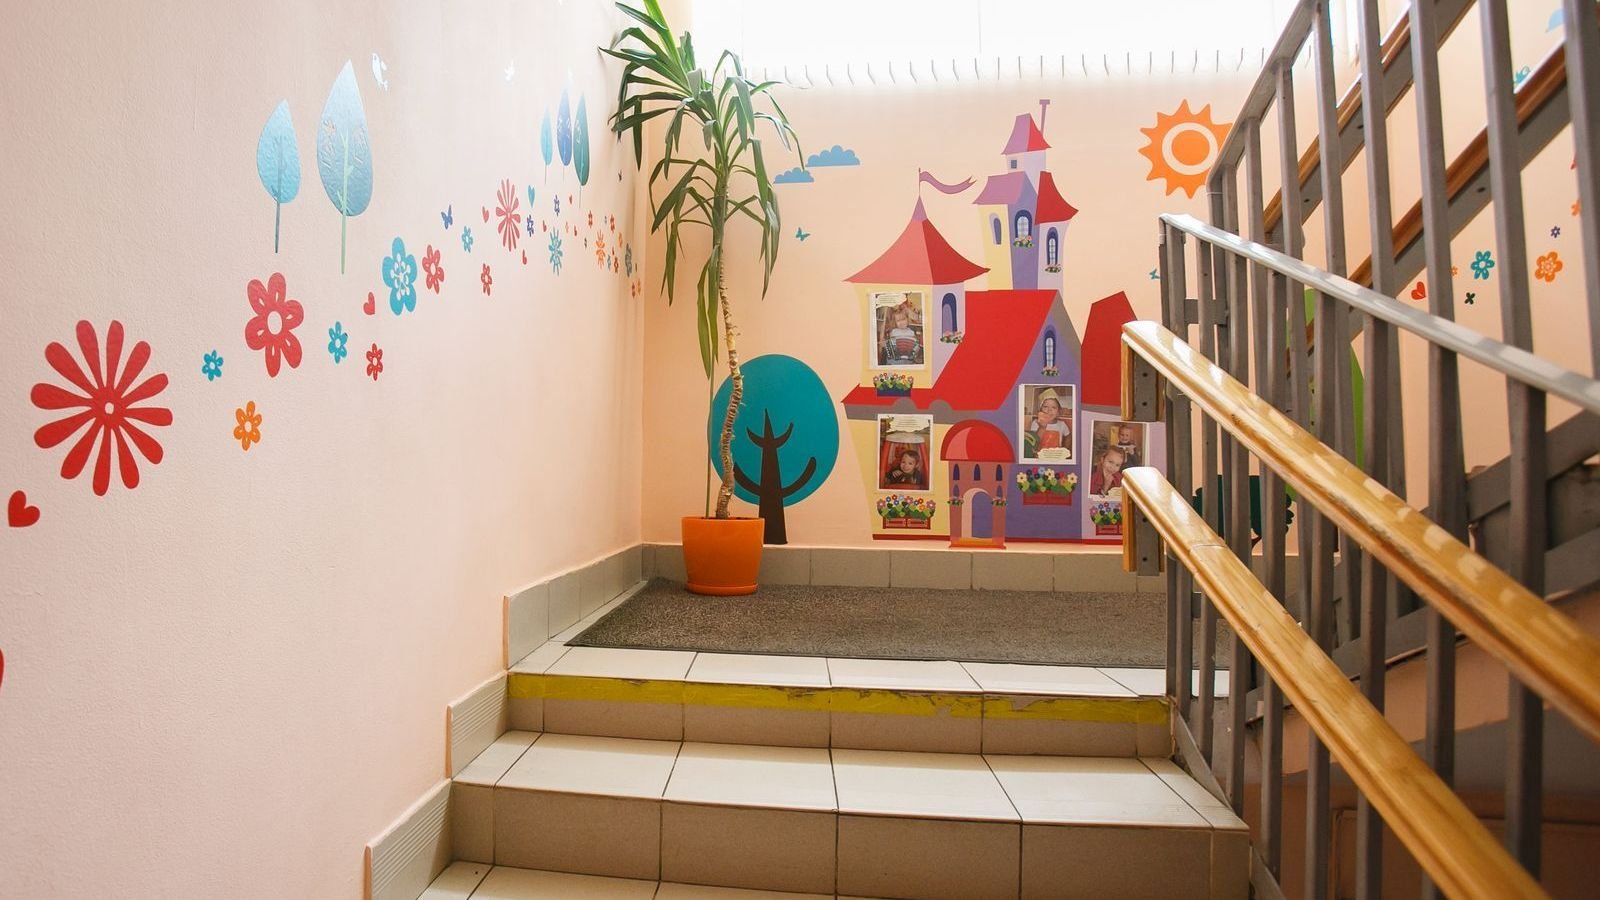 Оформление лестниц в детском саду, как средство формирования эстетического вкуса у дошкольников